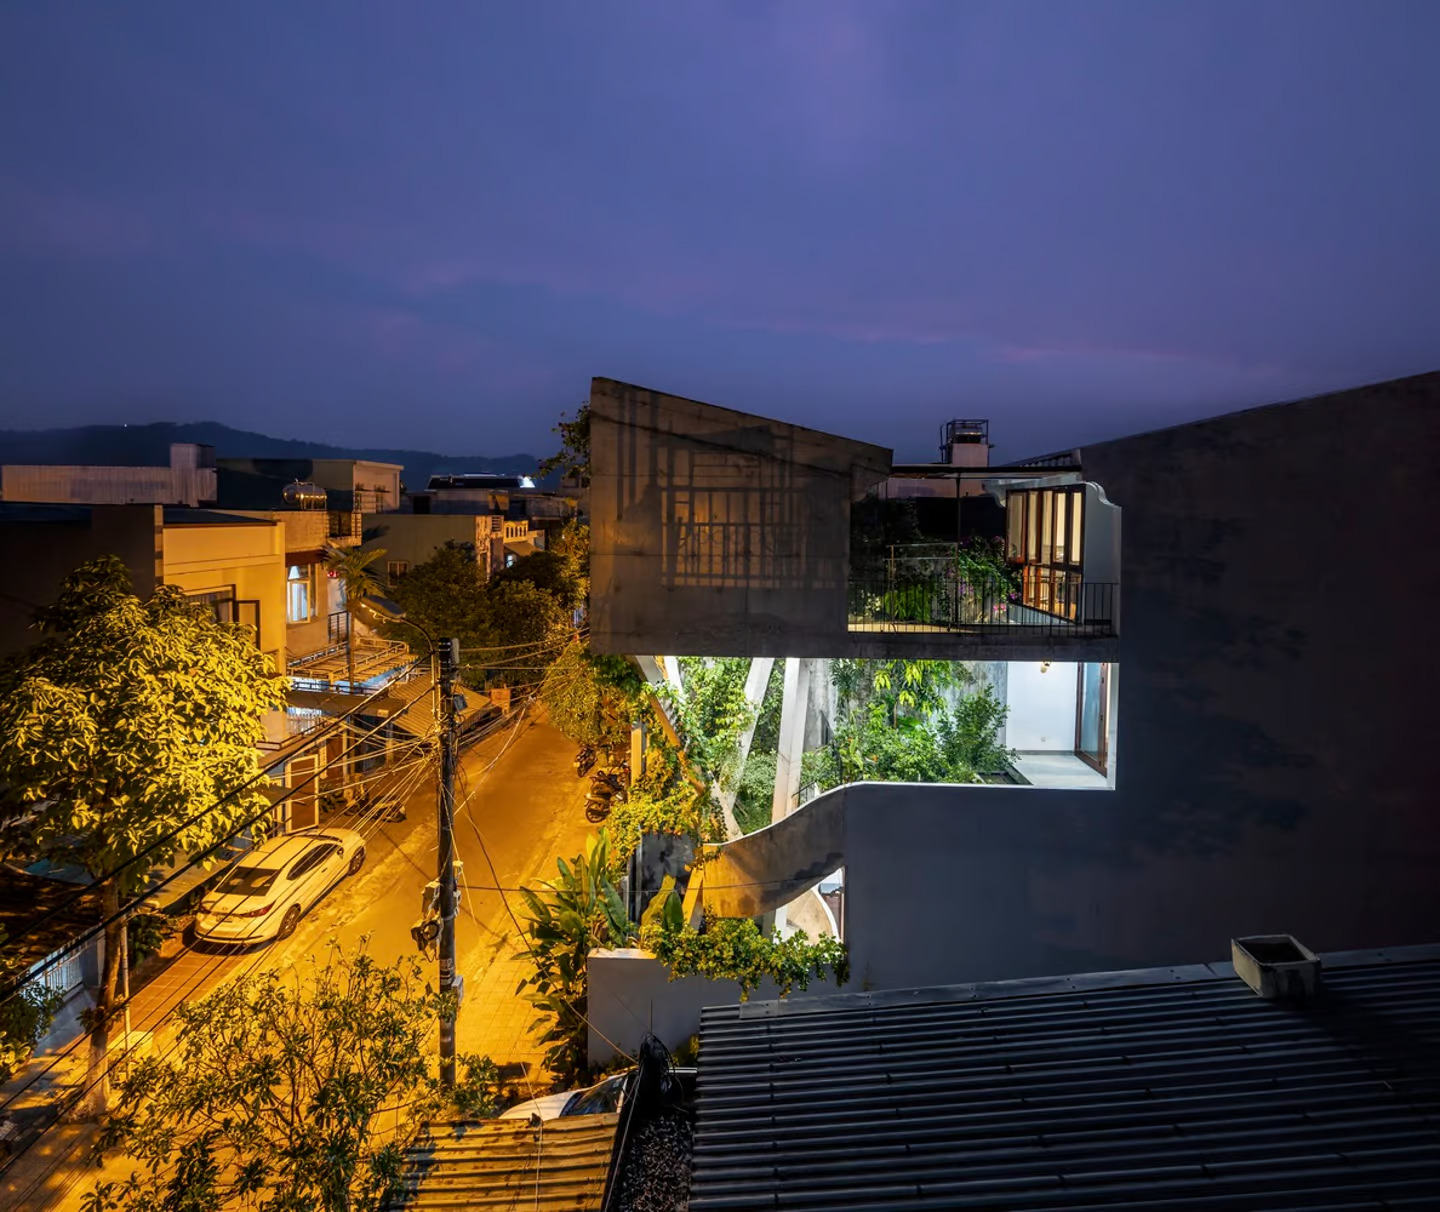 Многоэтажный дом Nest House парит над вьетнамскими городскими джунглями